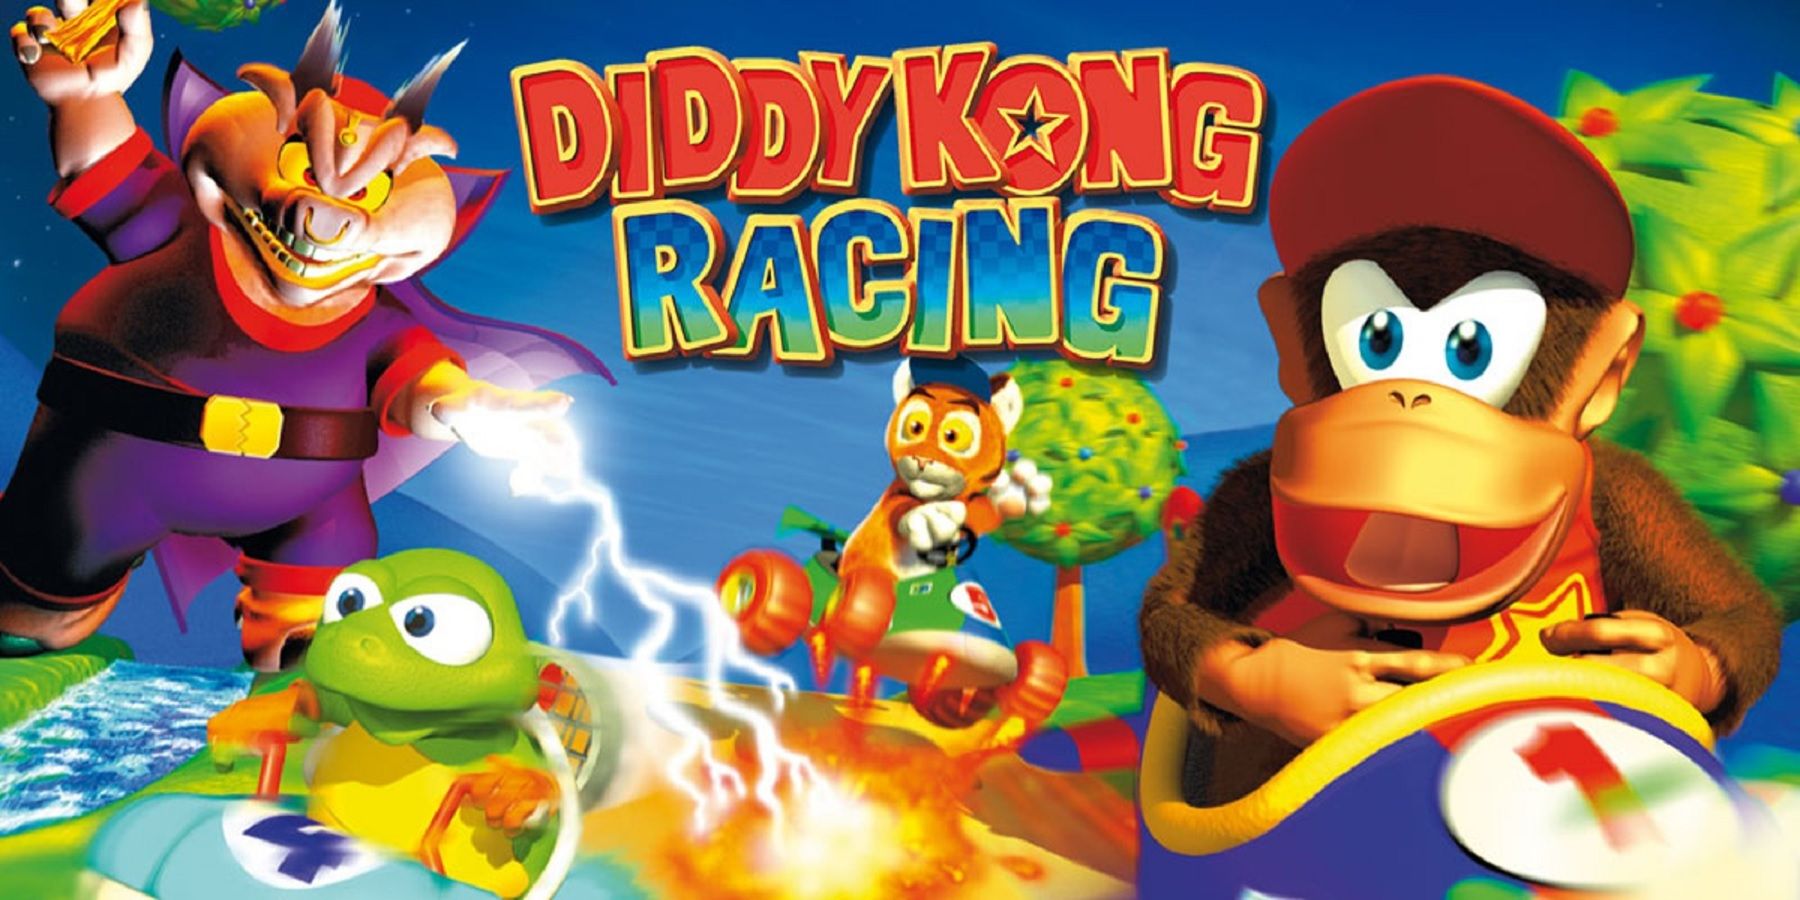 Leaker Tuntutan Diddy Kong Racing Akan Datang Beralih Dalam Talian